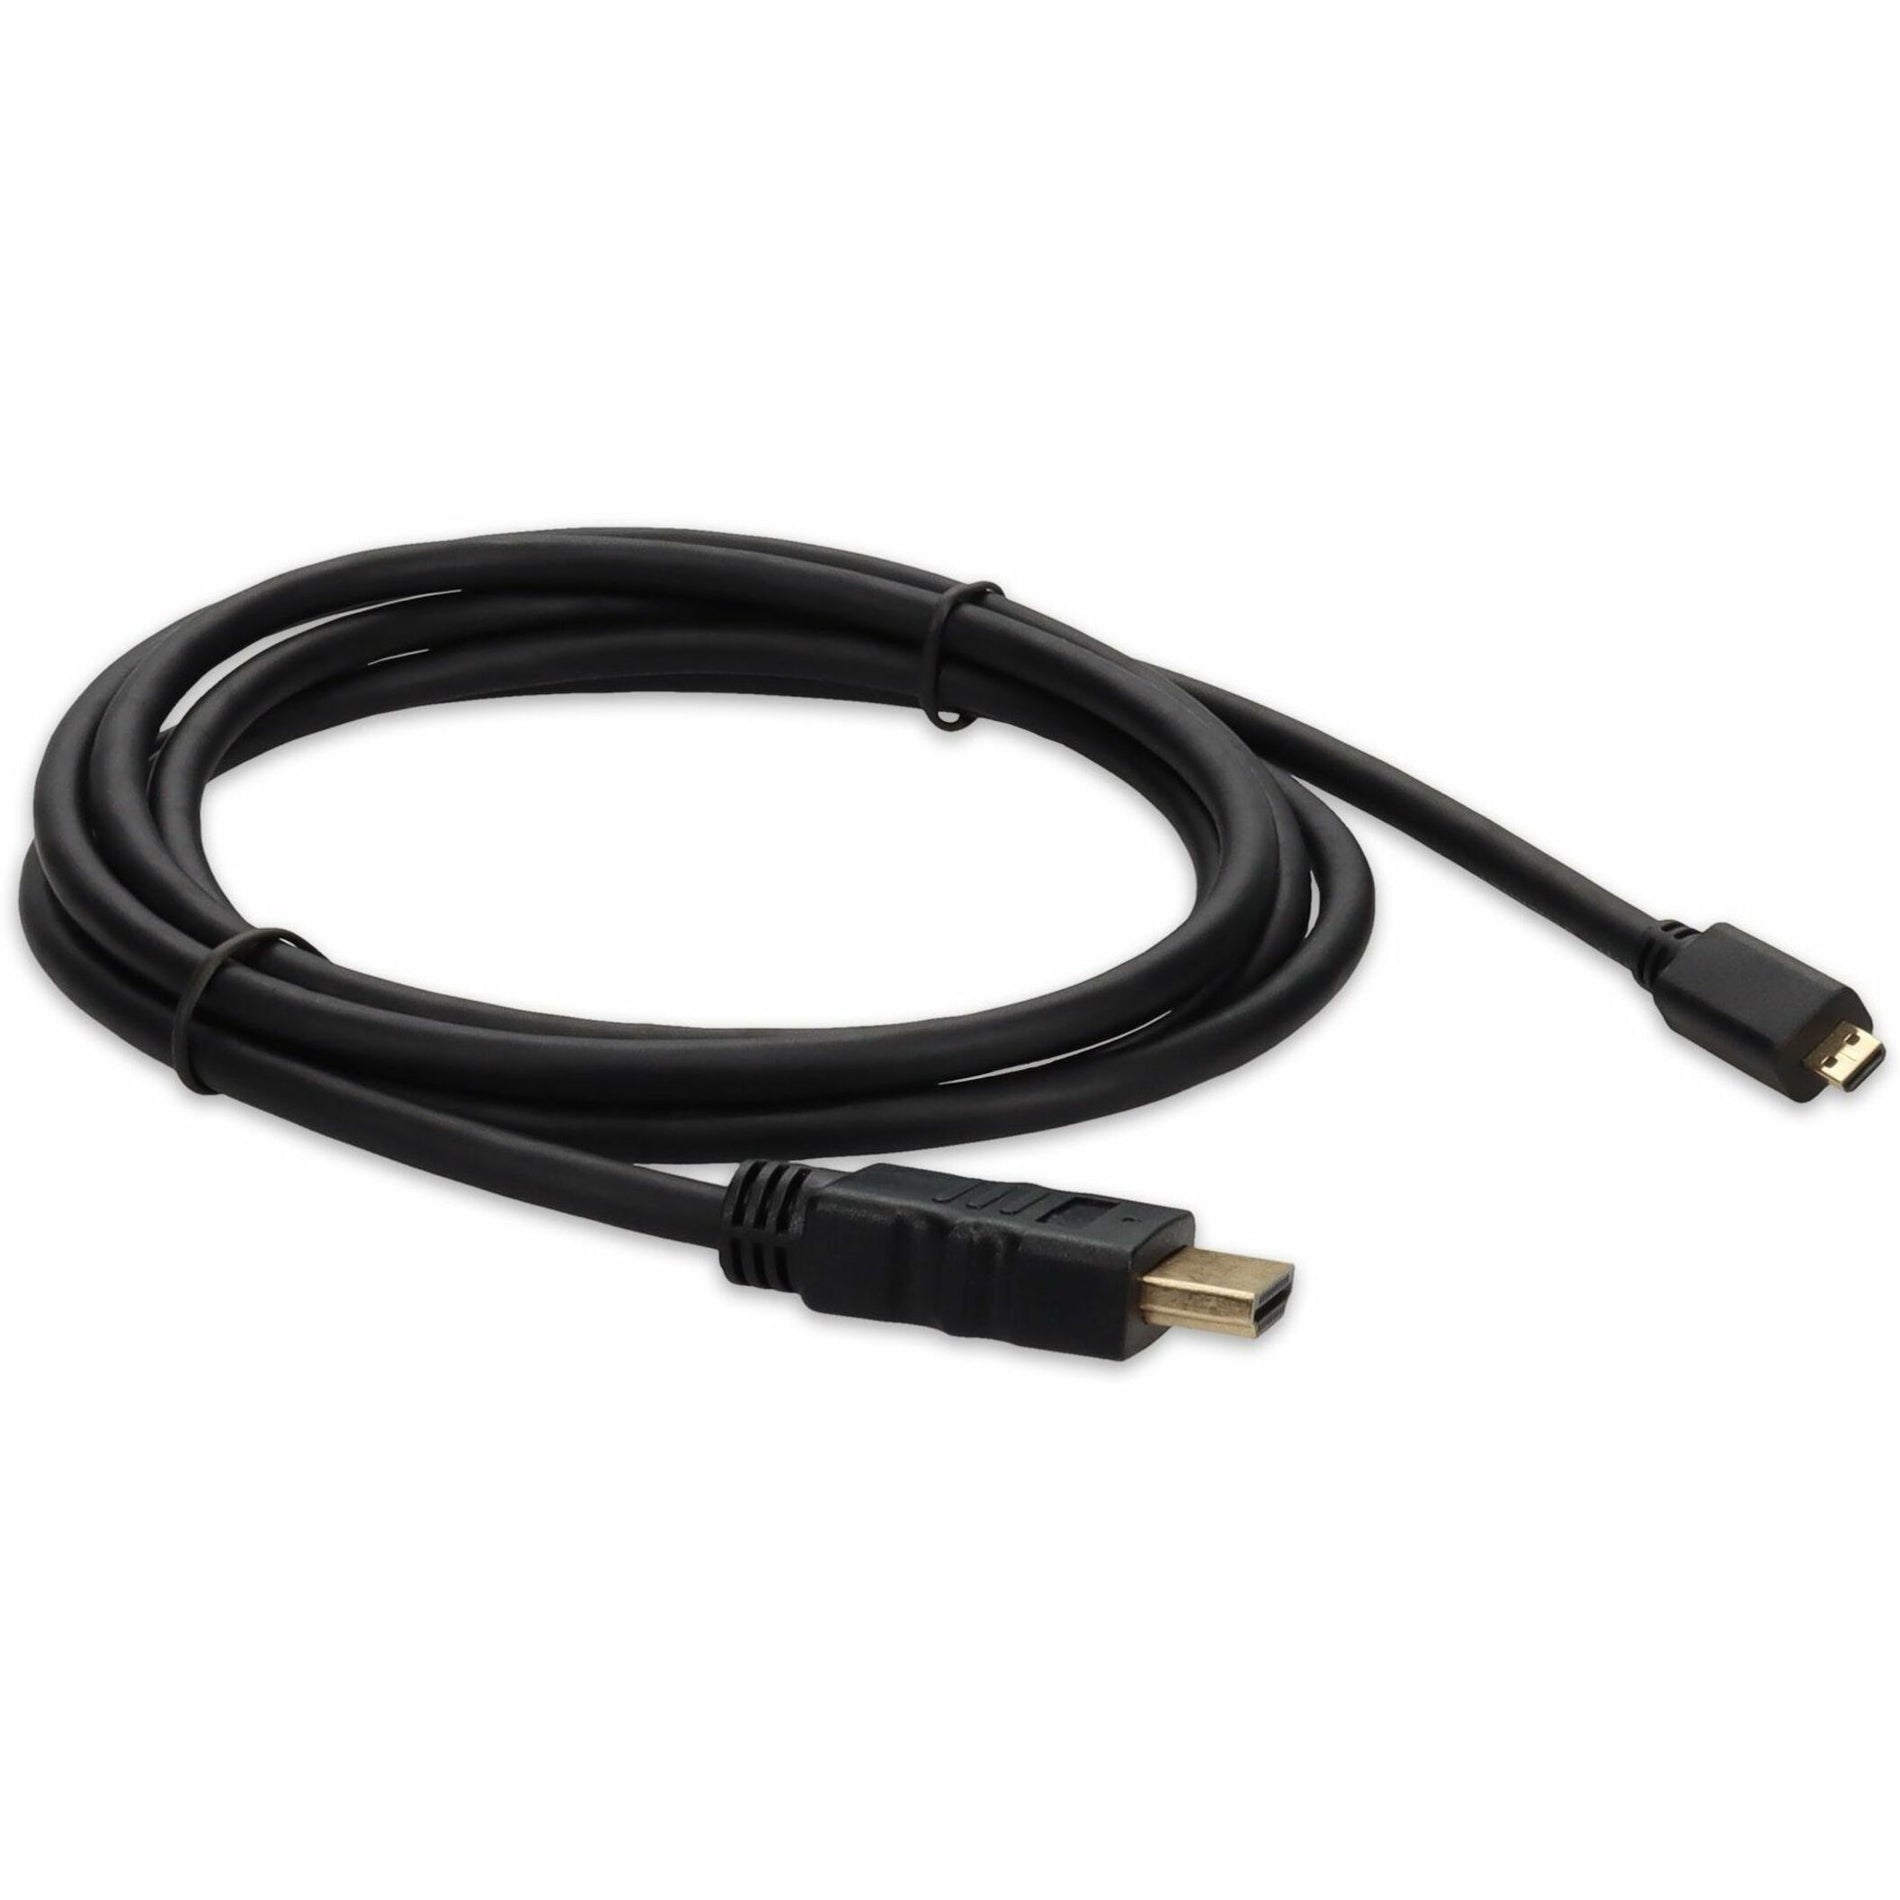 إضافة على HDMI2MHDMI3 3 قدم (30 سم) HDMI إلى محول Micro-HDMI كبل - ذكر إلى ذكر ، موصل نحاس ، طول الكابل 3 أقدام ، أسود  اسم العلامة التجارية: AddOn